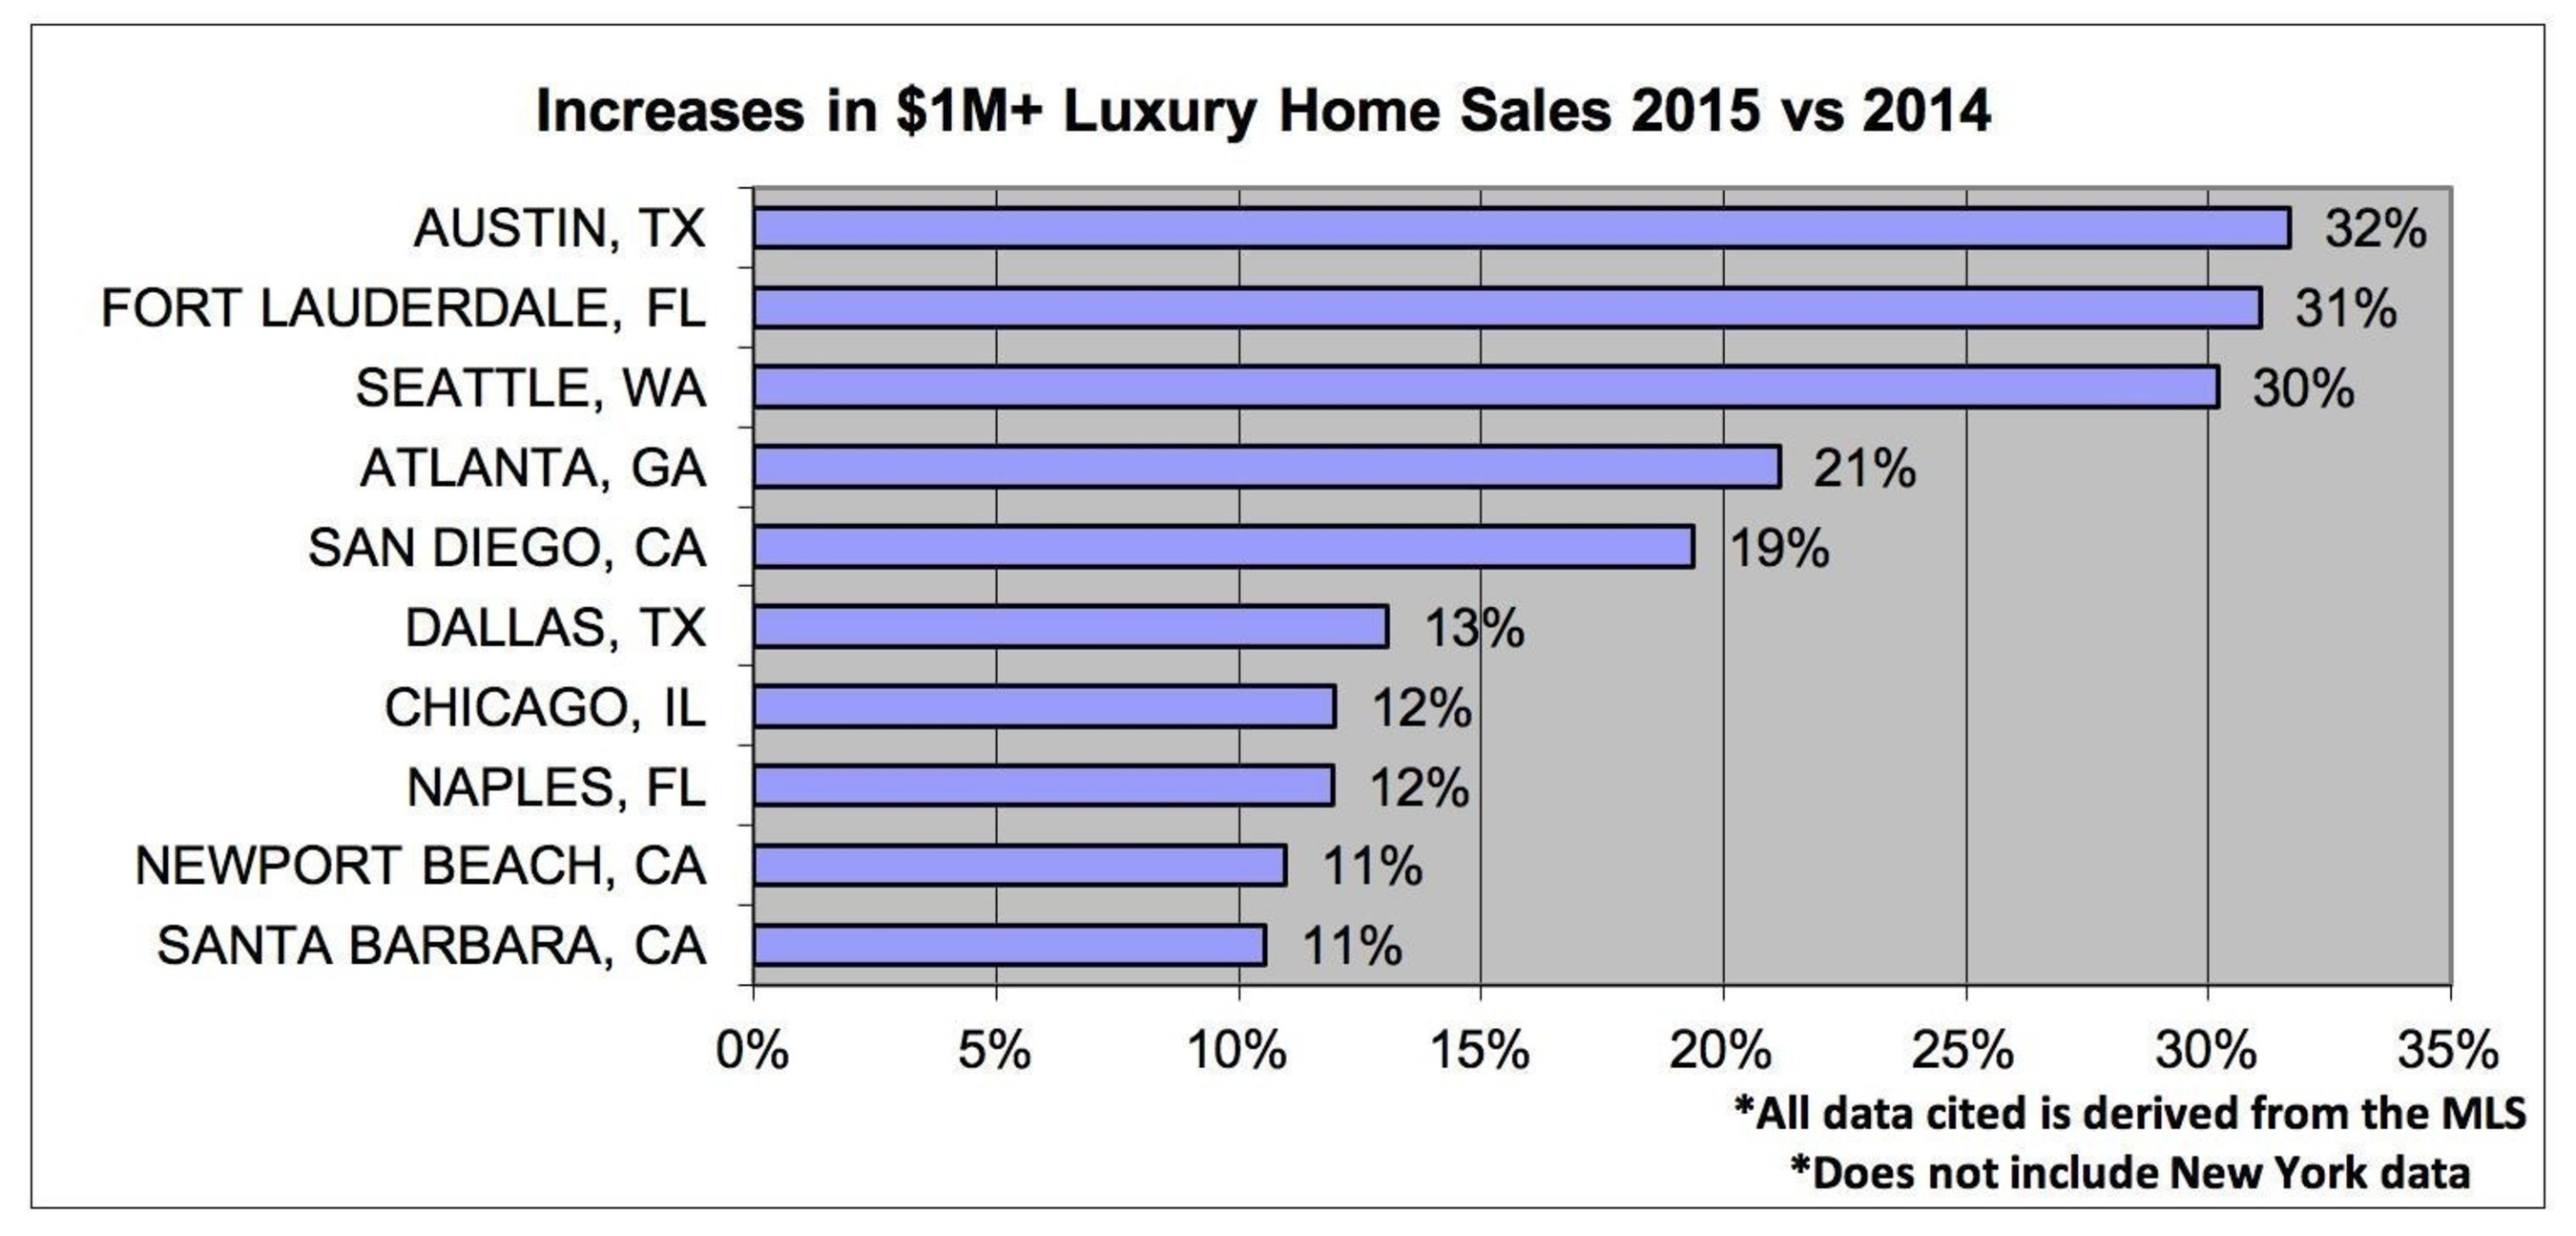 Increases in $1M+ Luxury Home Sales 2015 vs 2014